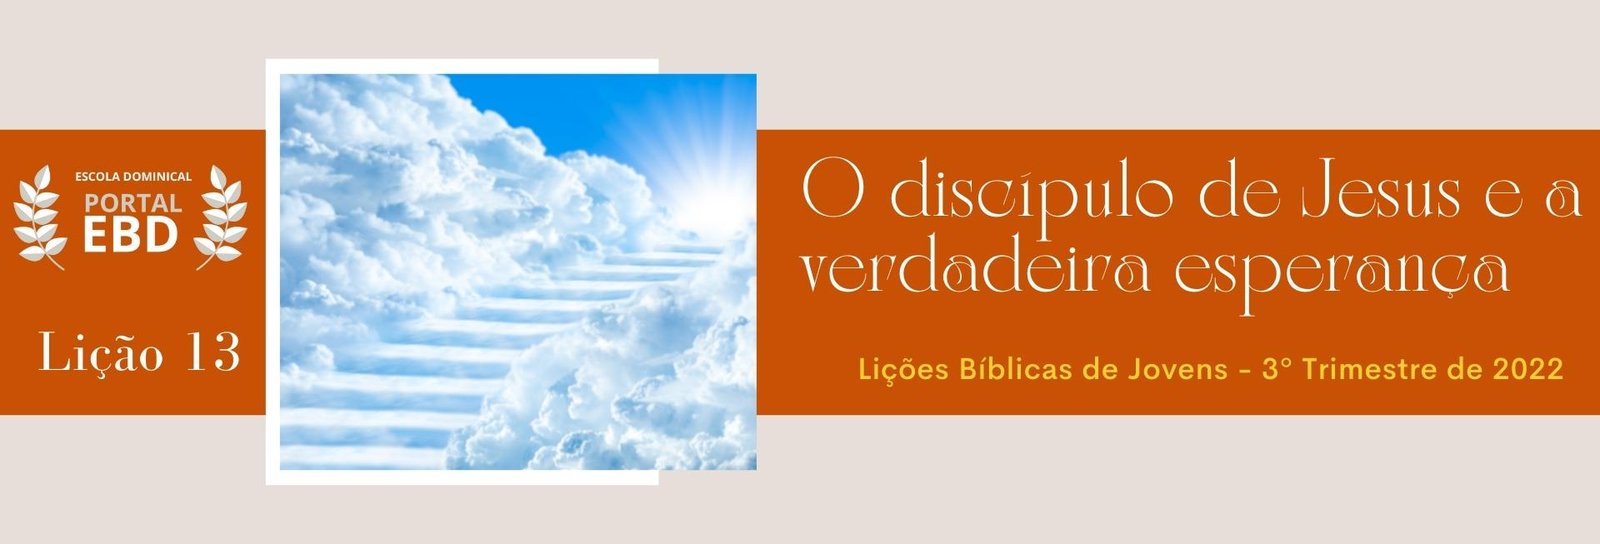 Lição 13 - O discípulo de Jesus e a verdadeira esperança II